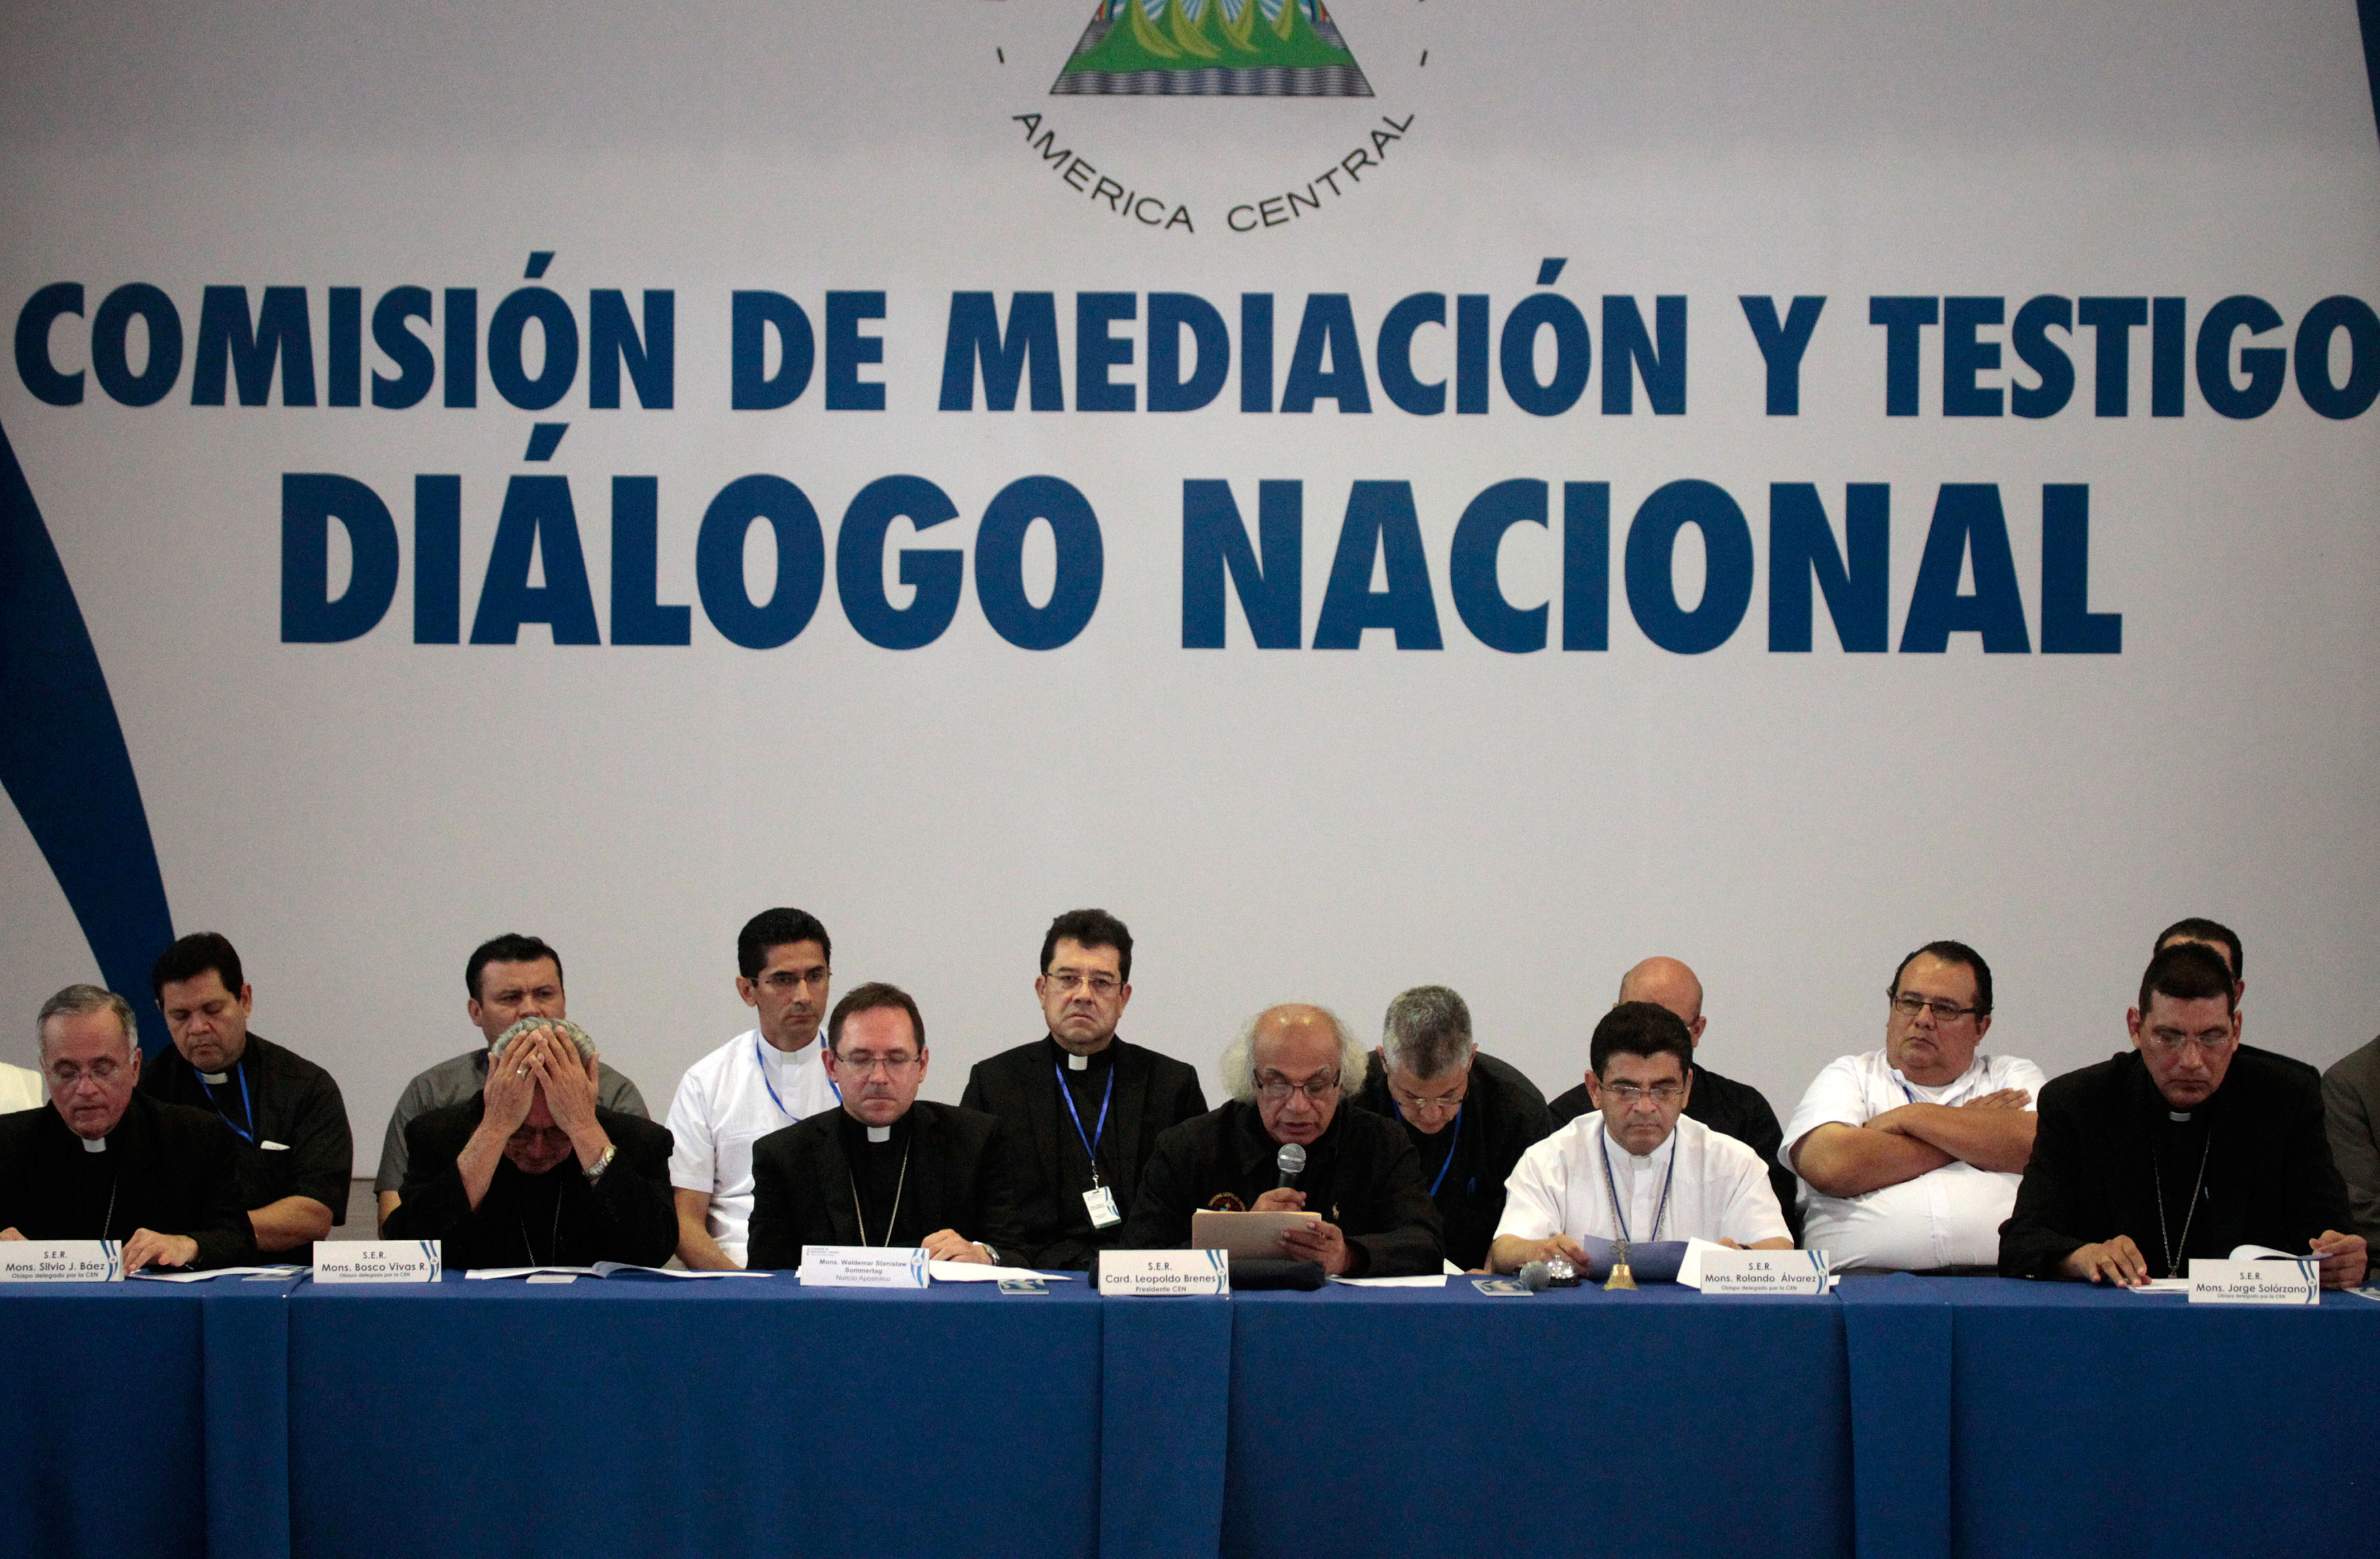 La iglesia católica sirvió como mediadora en los diálogos que sostuvo el gobierno de Daniel Ortega con la oposición en 2018 y 2019. (REUTERS/Jorge Cabrera)